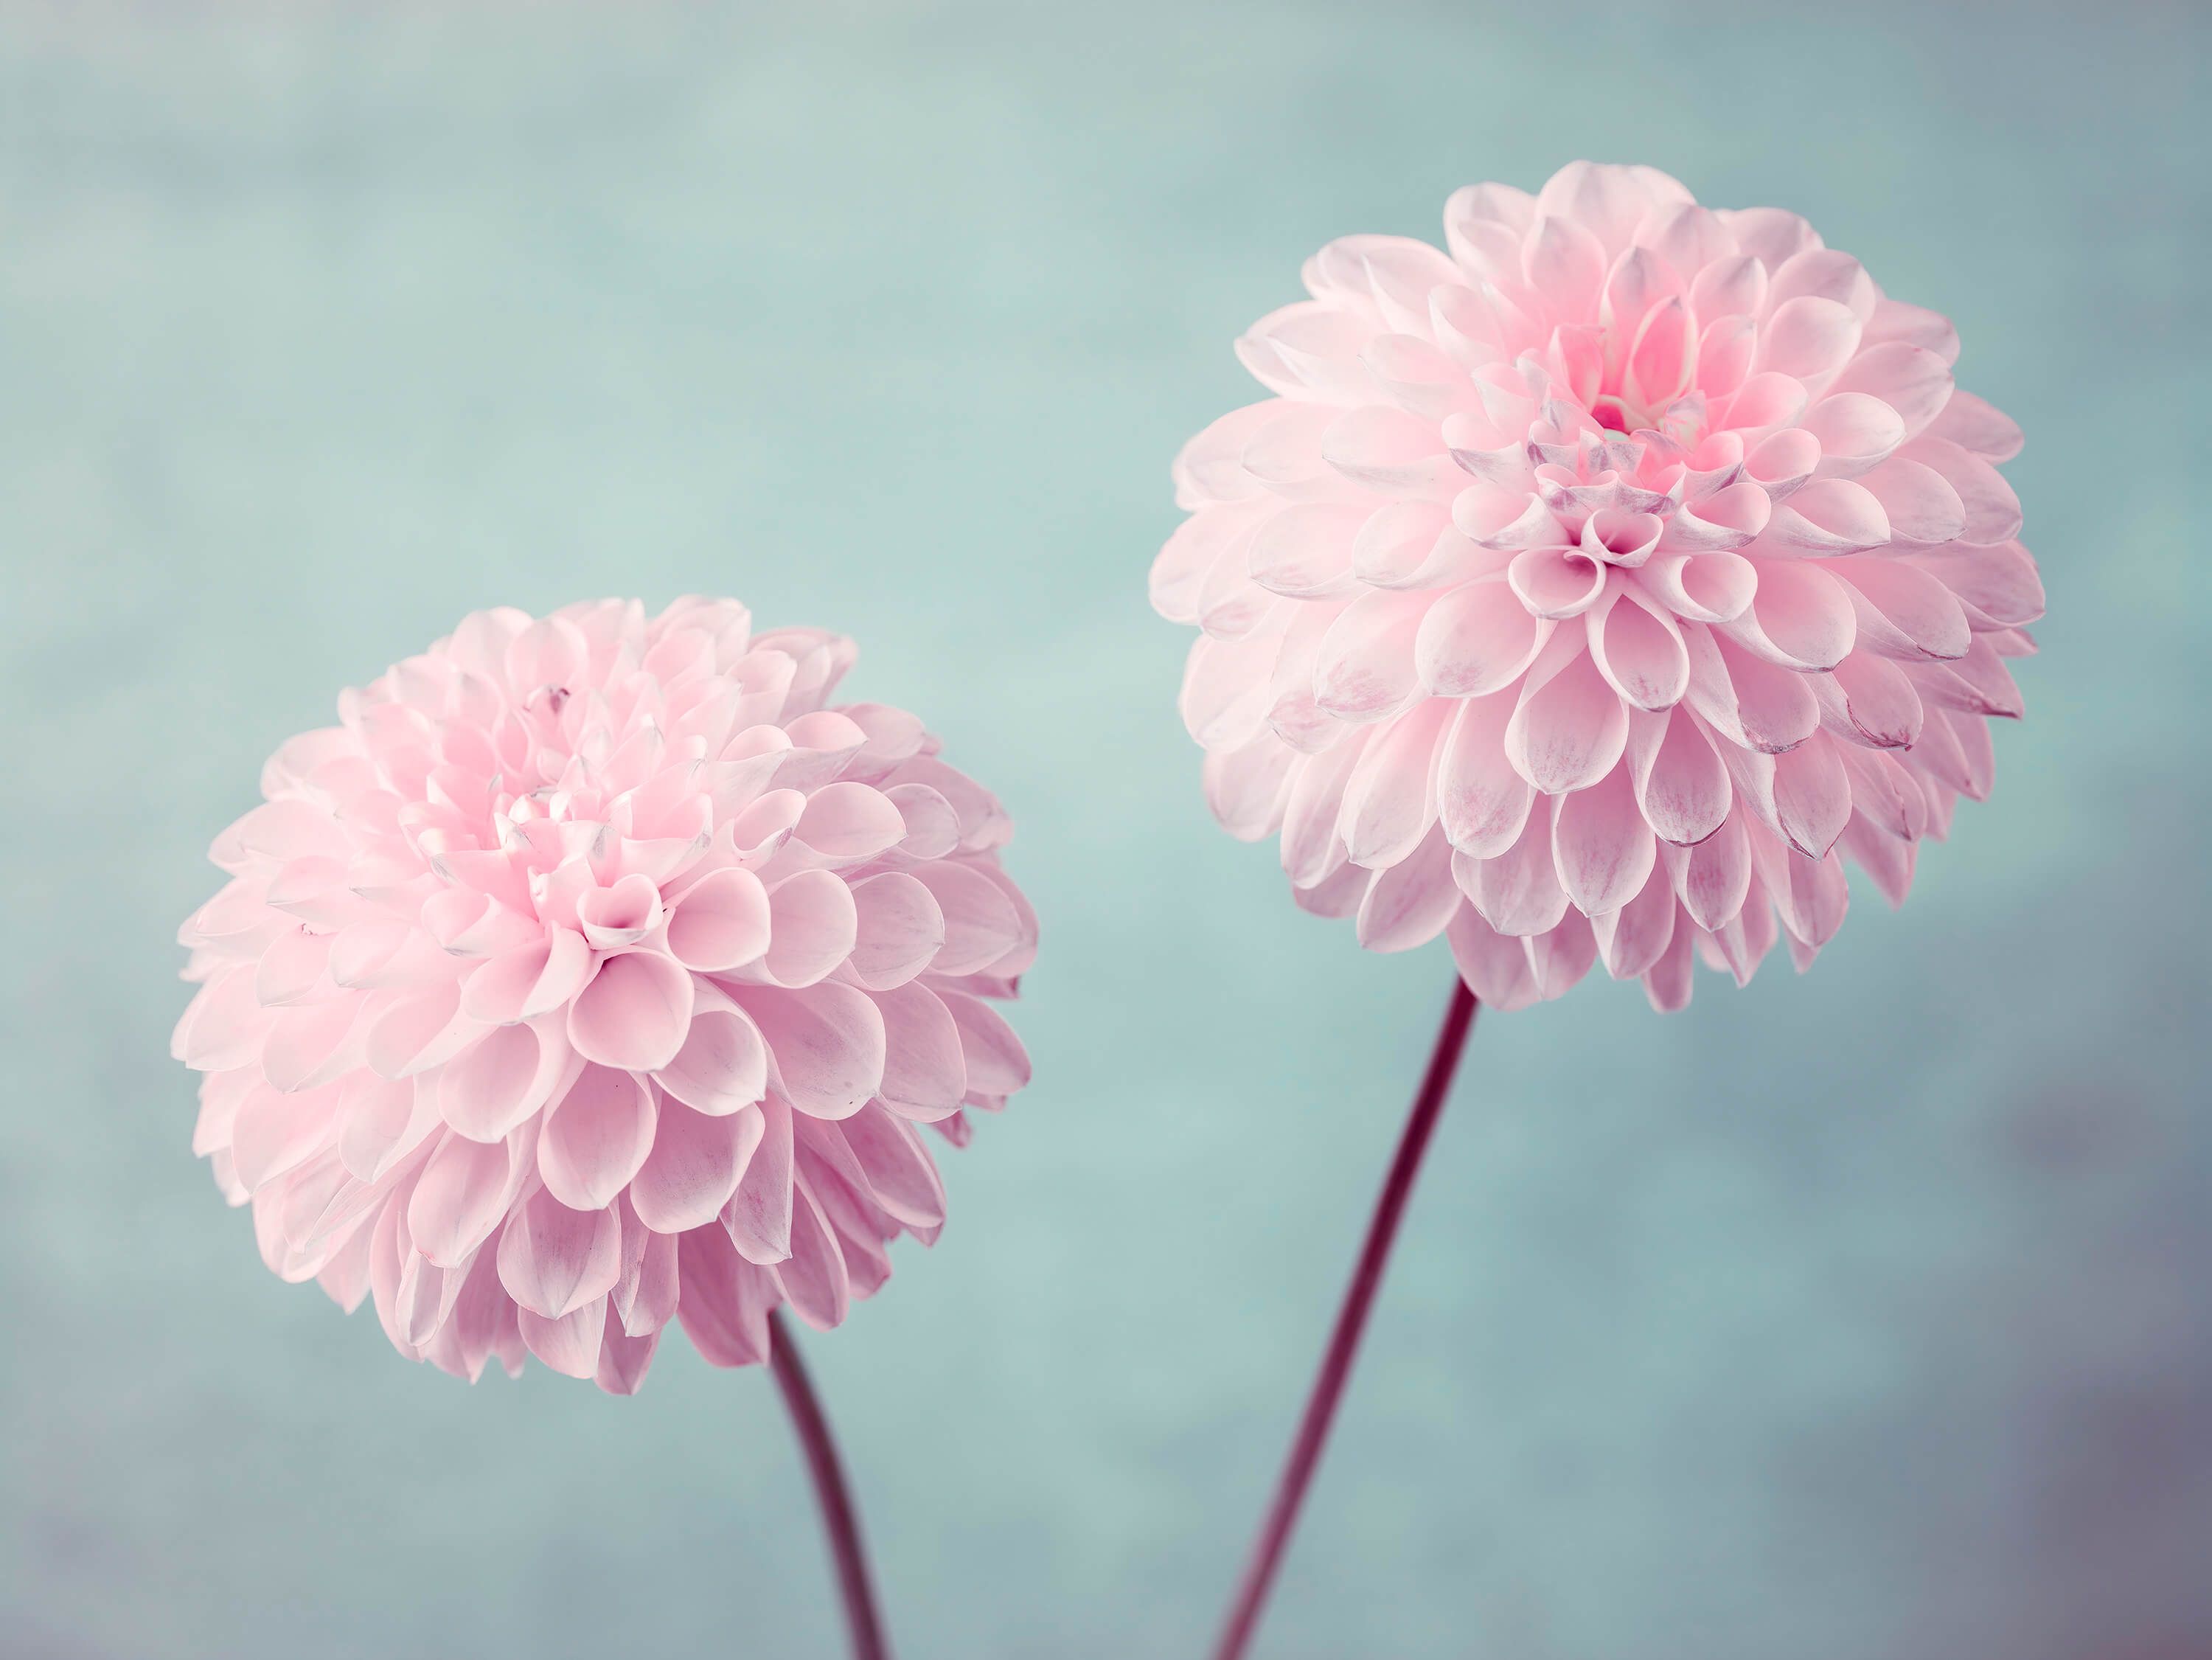  Two Dahlia Flowers